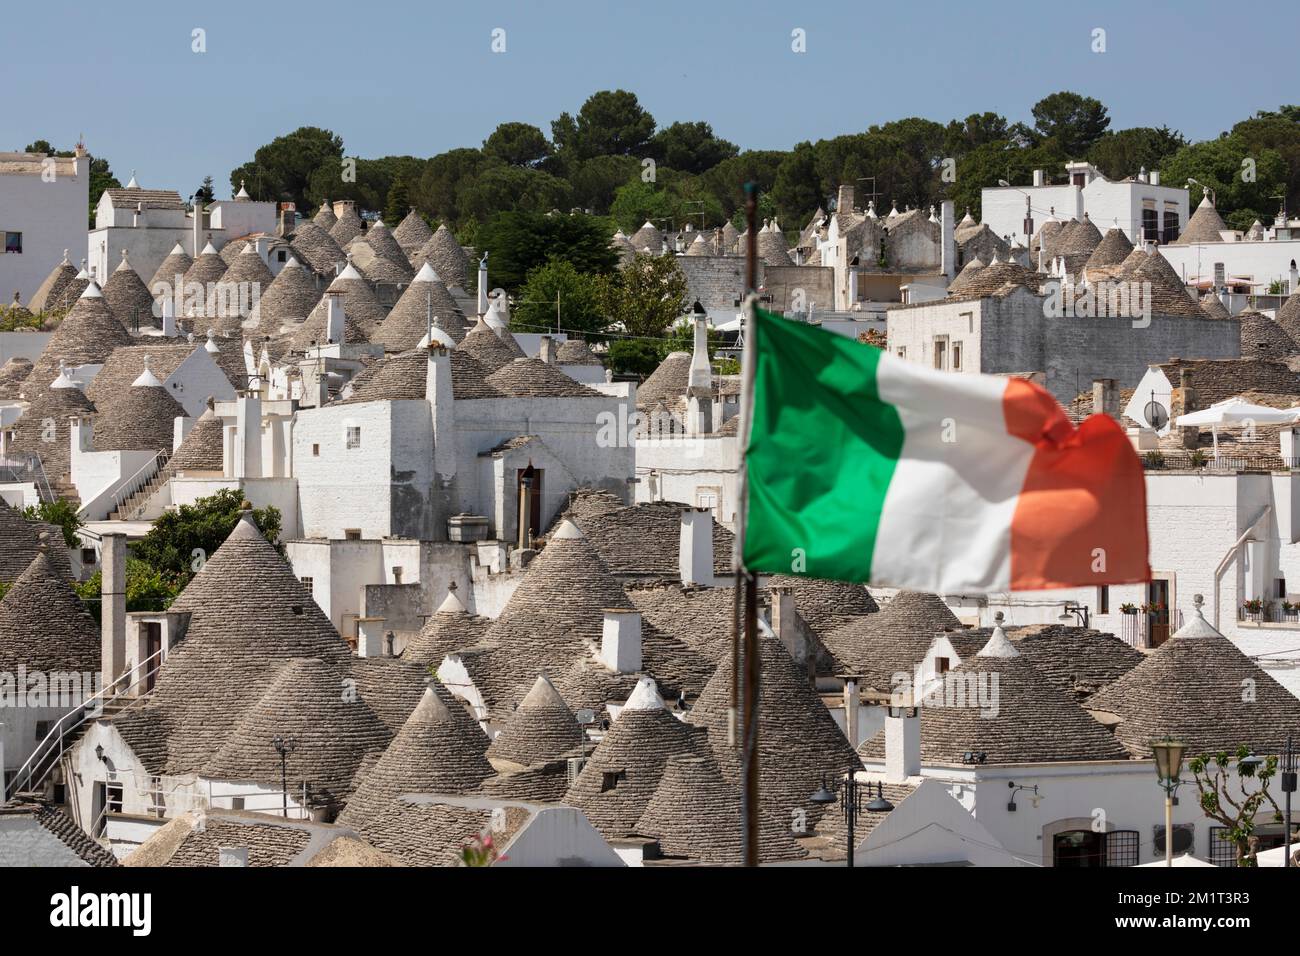 Toits coniques de maisons trulli avec drapeau italien dans la vieille ville, Alberobello, Puglia, Italie, Europe Banque D'Images